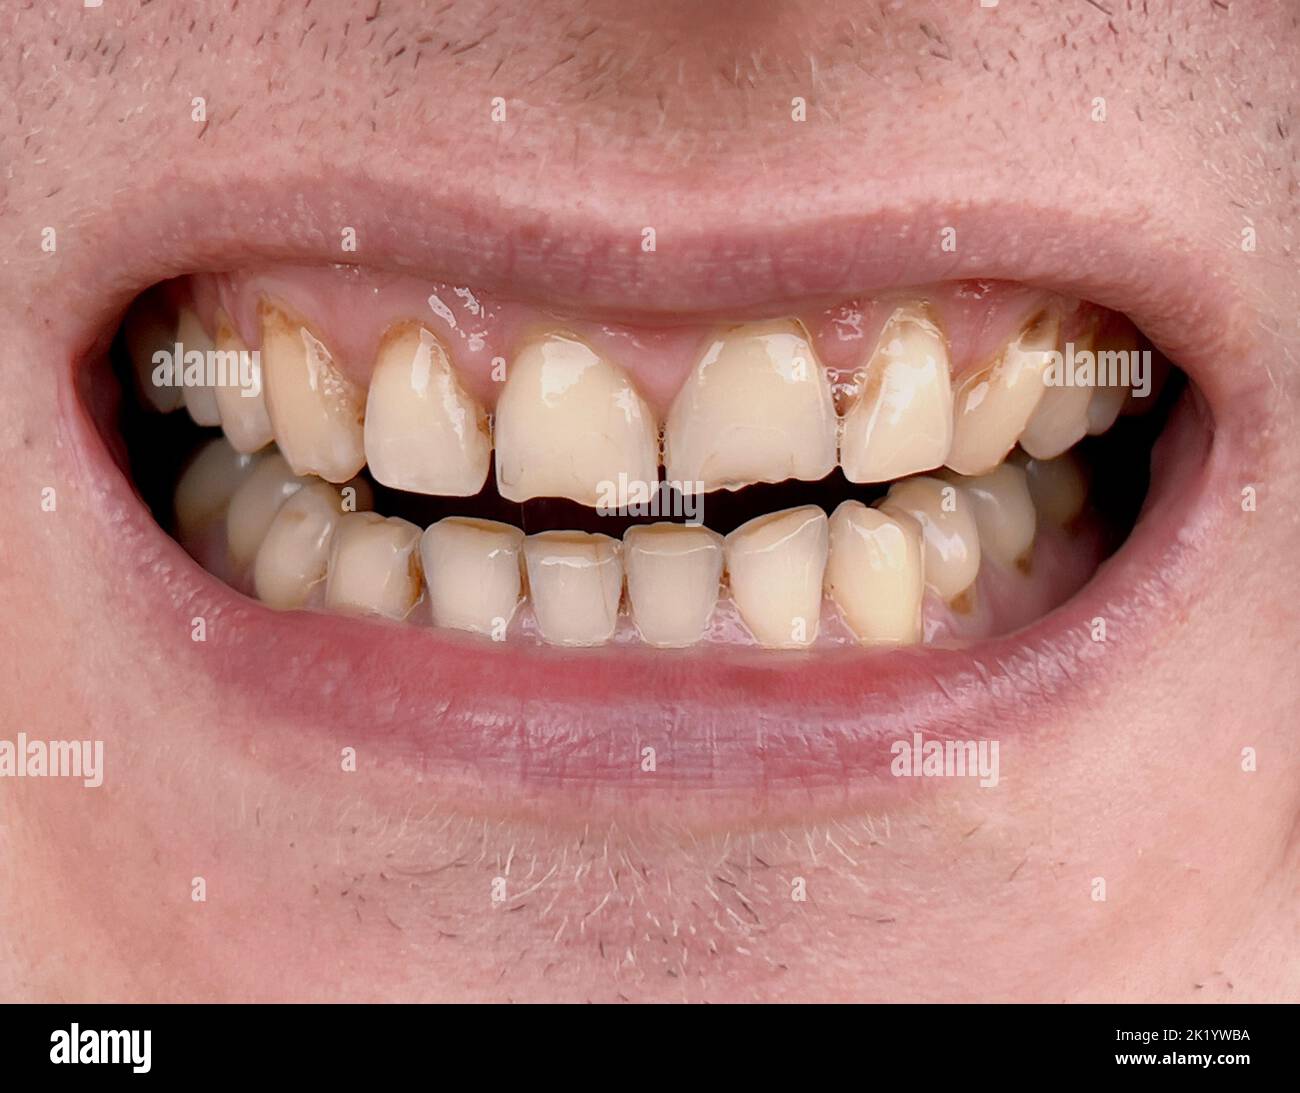 Boca sonriente del hombre con dientes amarillos torcidos de cerca. Dientes malsanos gastados que requieren tratamiento en odontología. Bruxismo Foto de stock